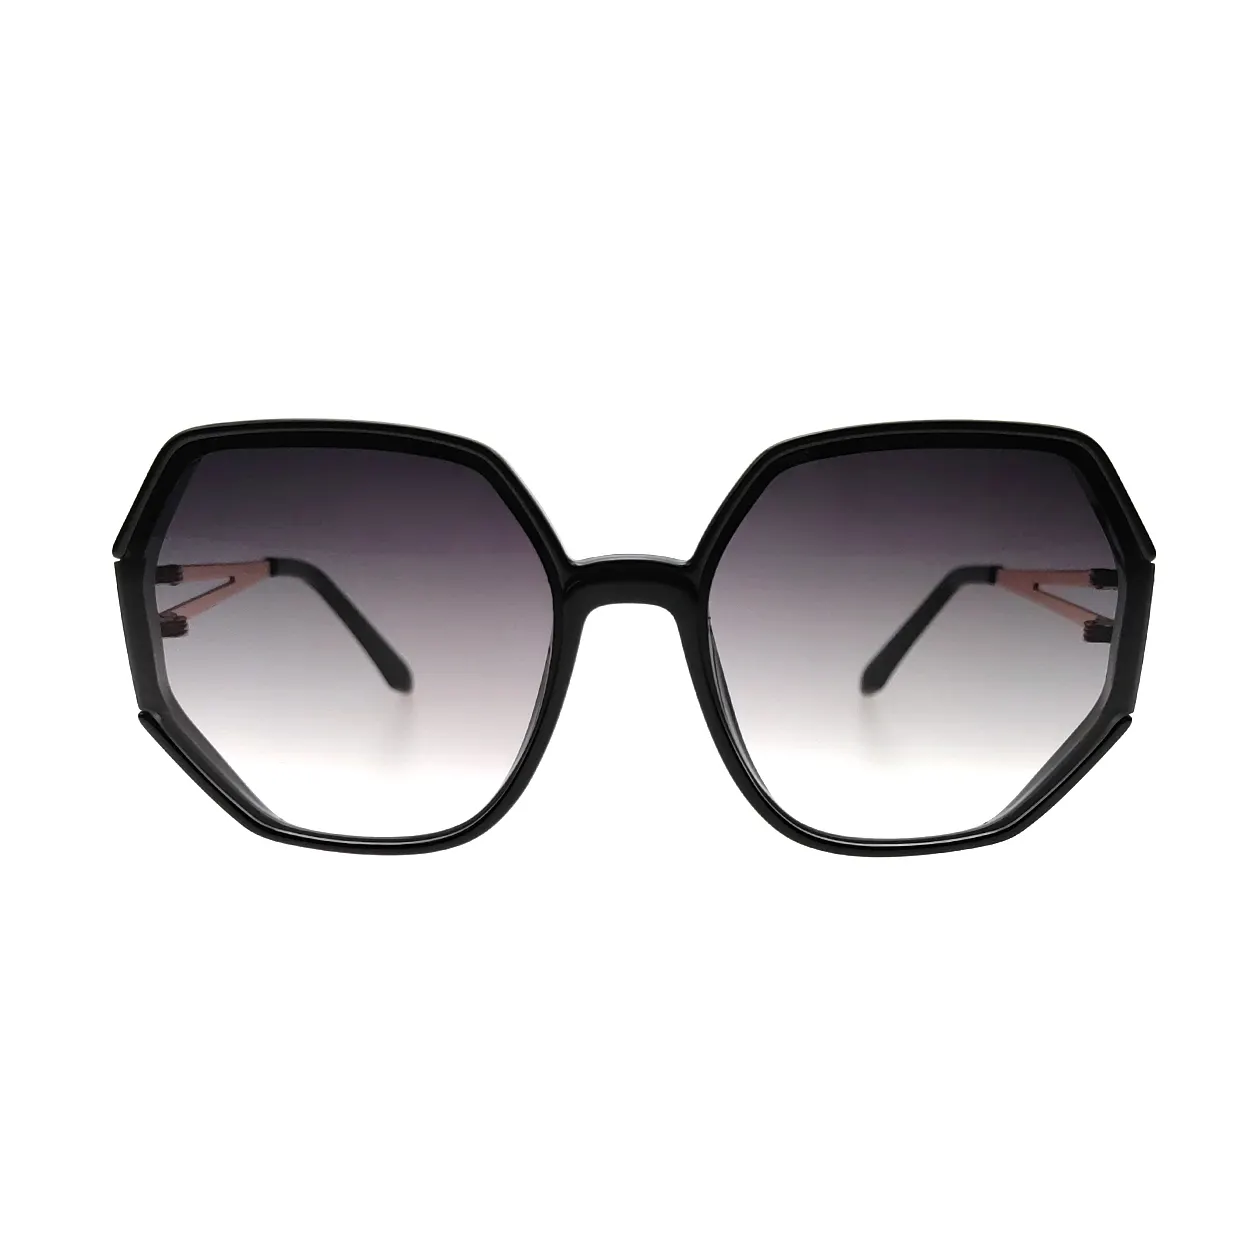 좋은 품질의 금속 사각형 선글라스 그라디언트 선글라스 여성 큰 프레임 새로운 스타일 대형 패션 선글라스